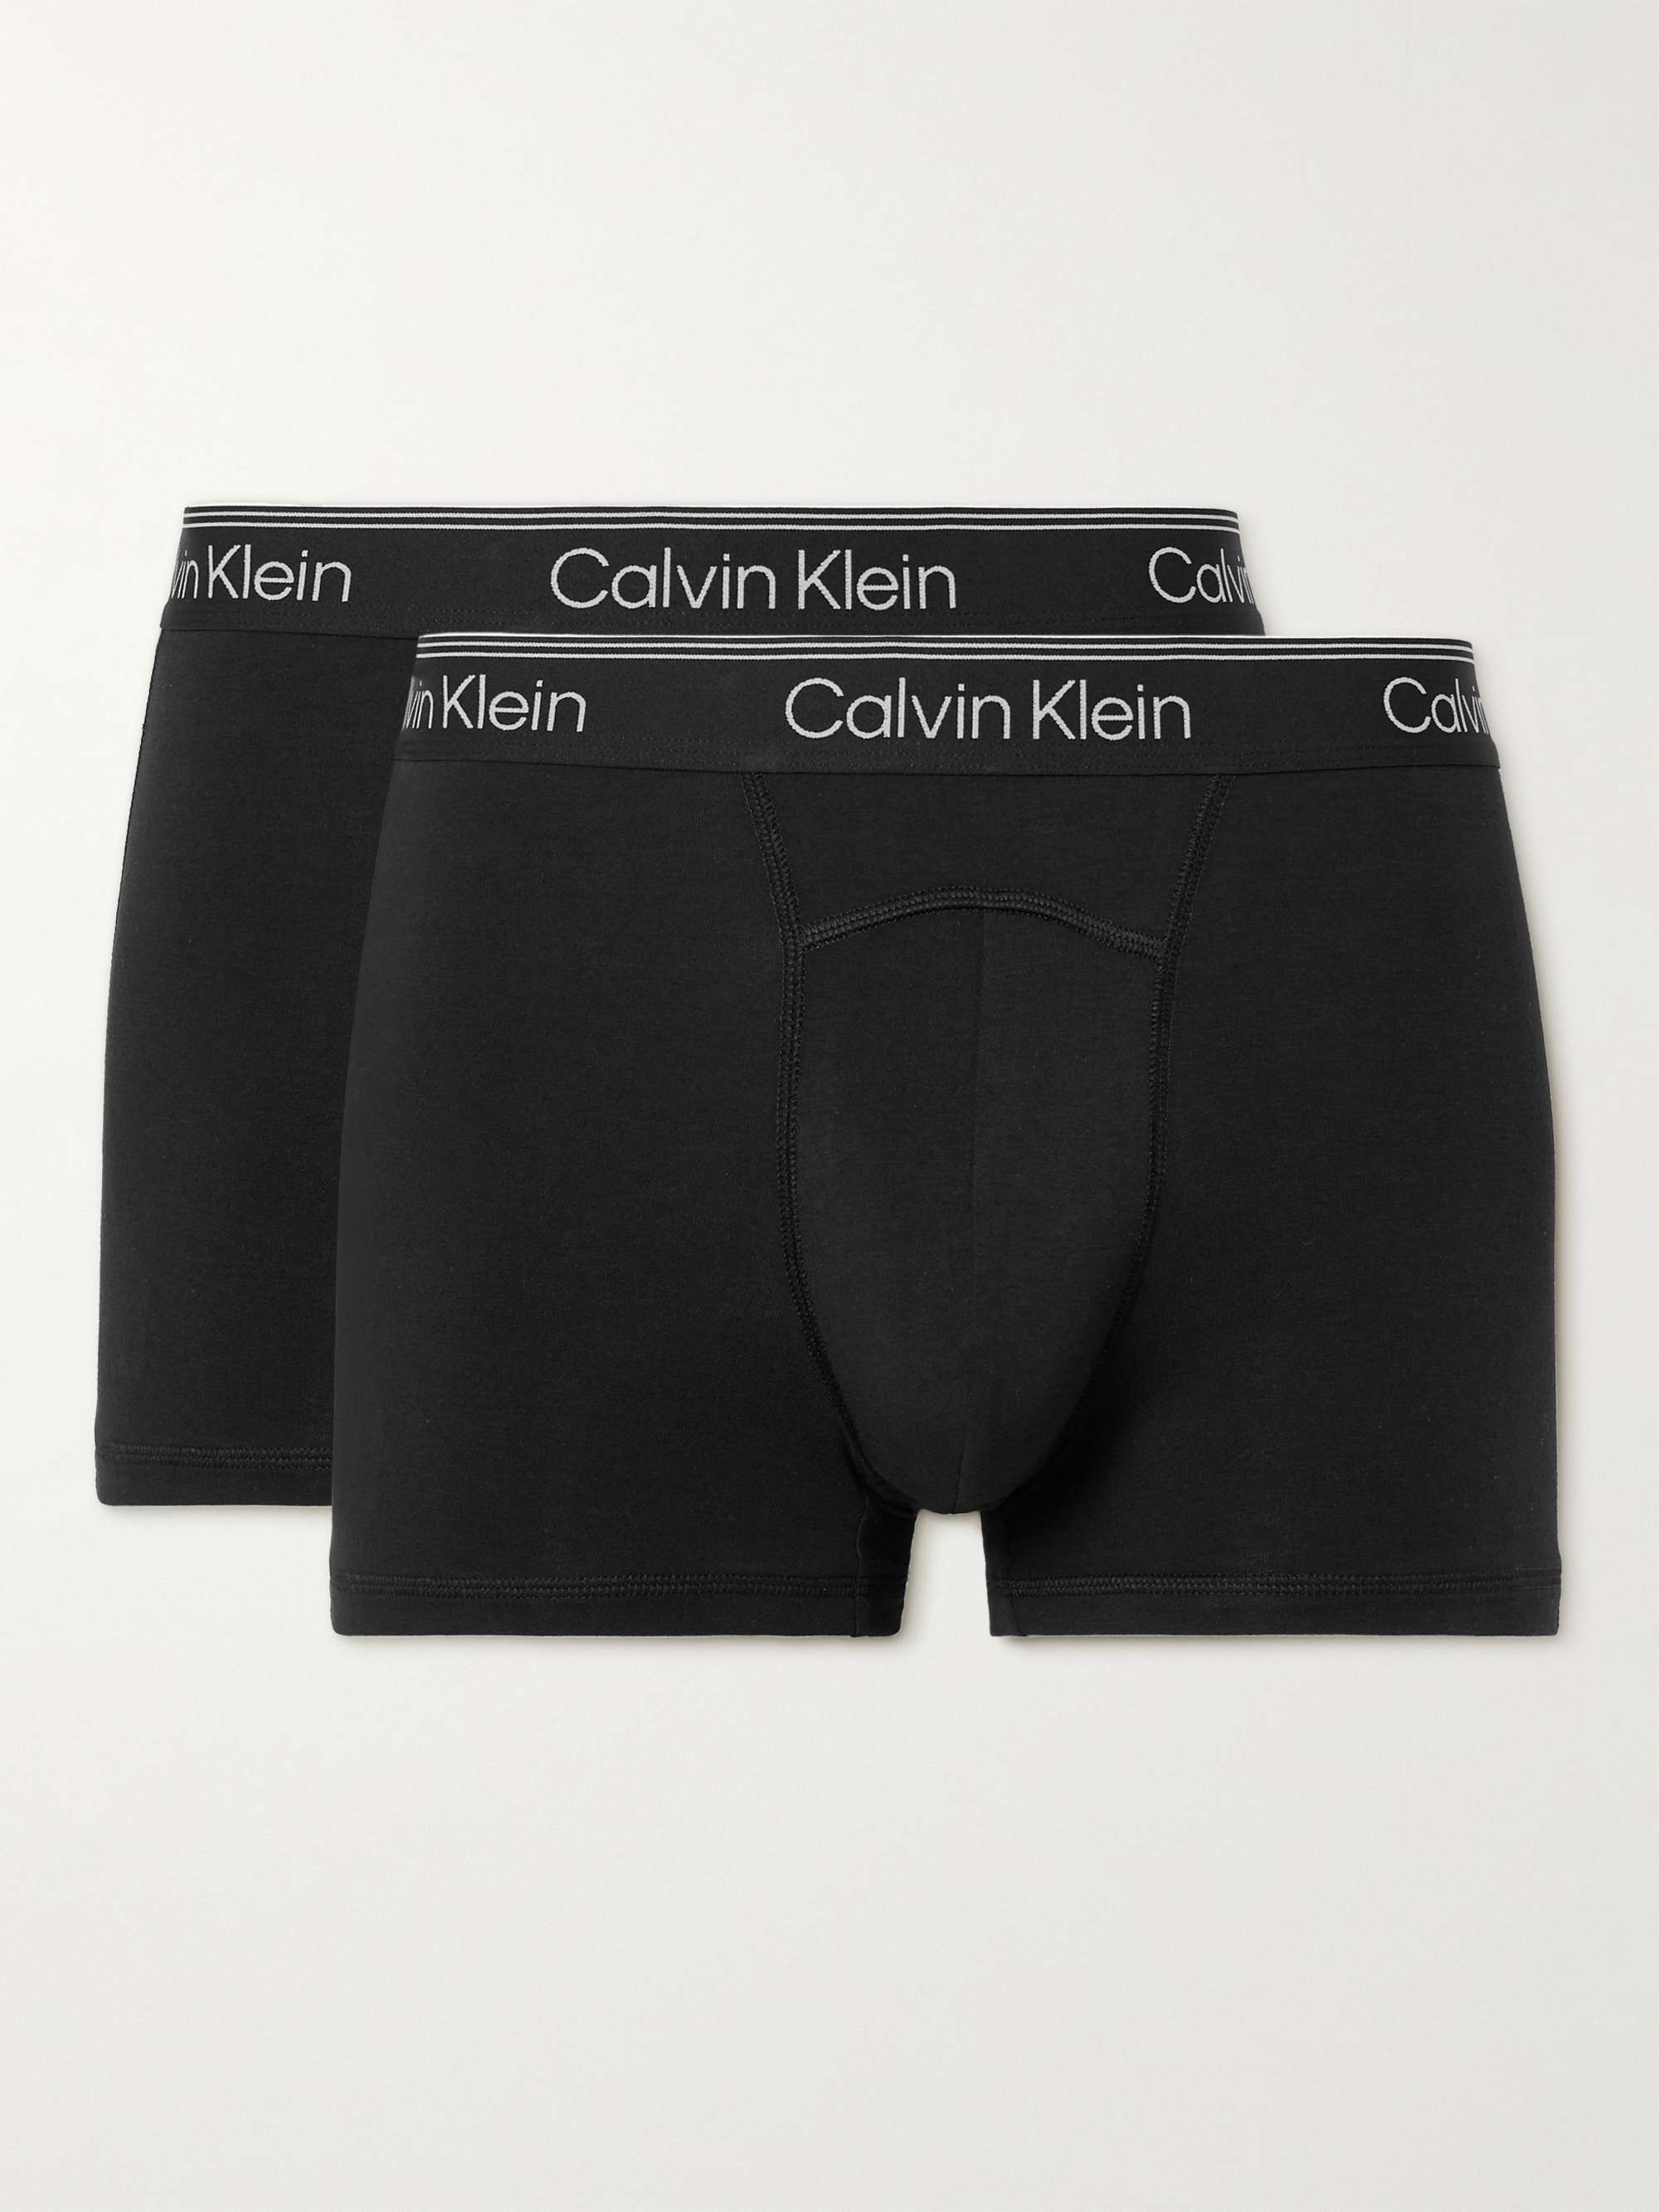 CALVIN KLEIN COTTON STRETCH MEN BOXER BRIEFS ( PACK OF 4)